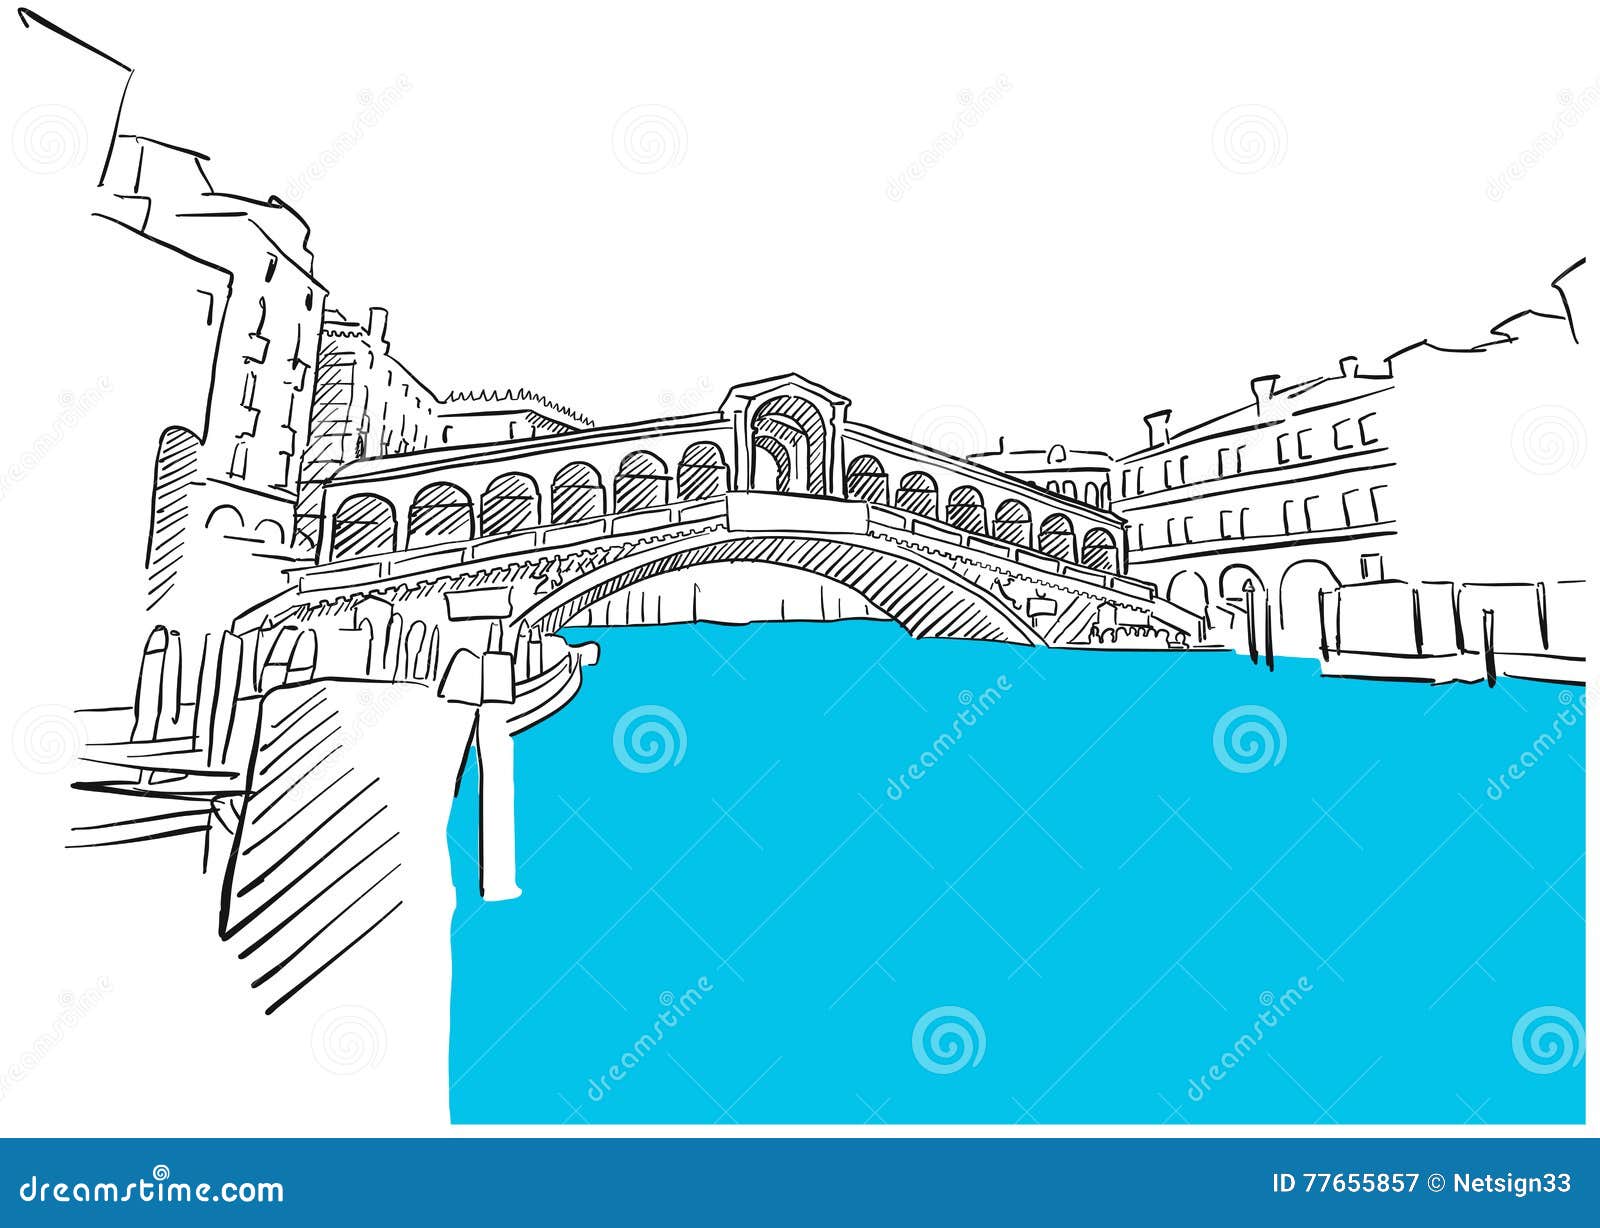 How to Draw Rialto Bridge  Venice  YouTube